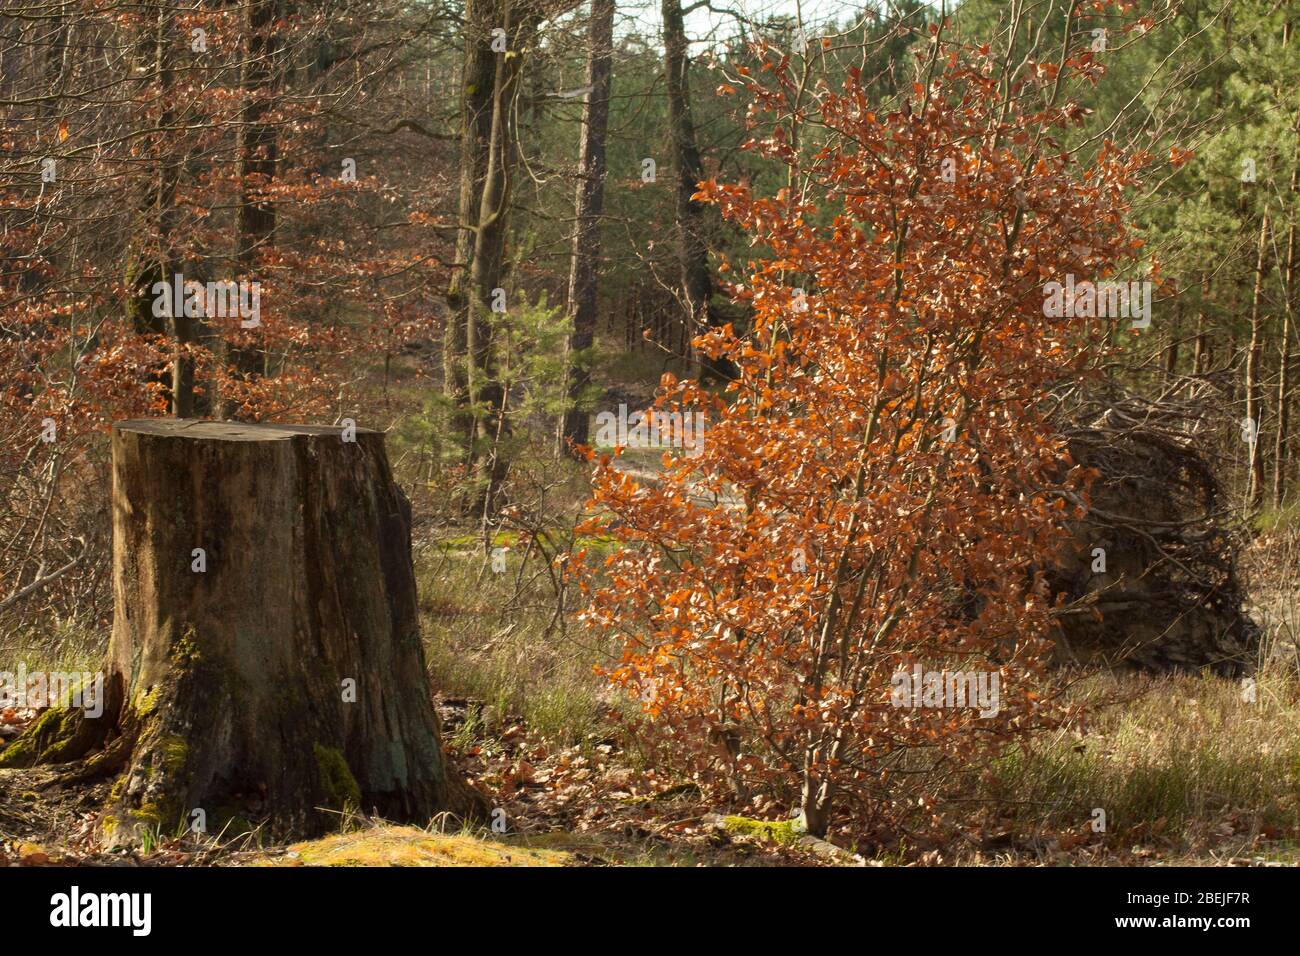 Una bella immagine di un tronco tagliato con un albero giovane che cresce entrambi. Foto Stock